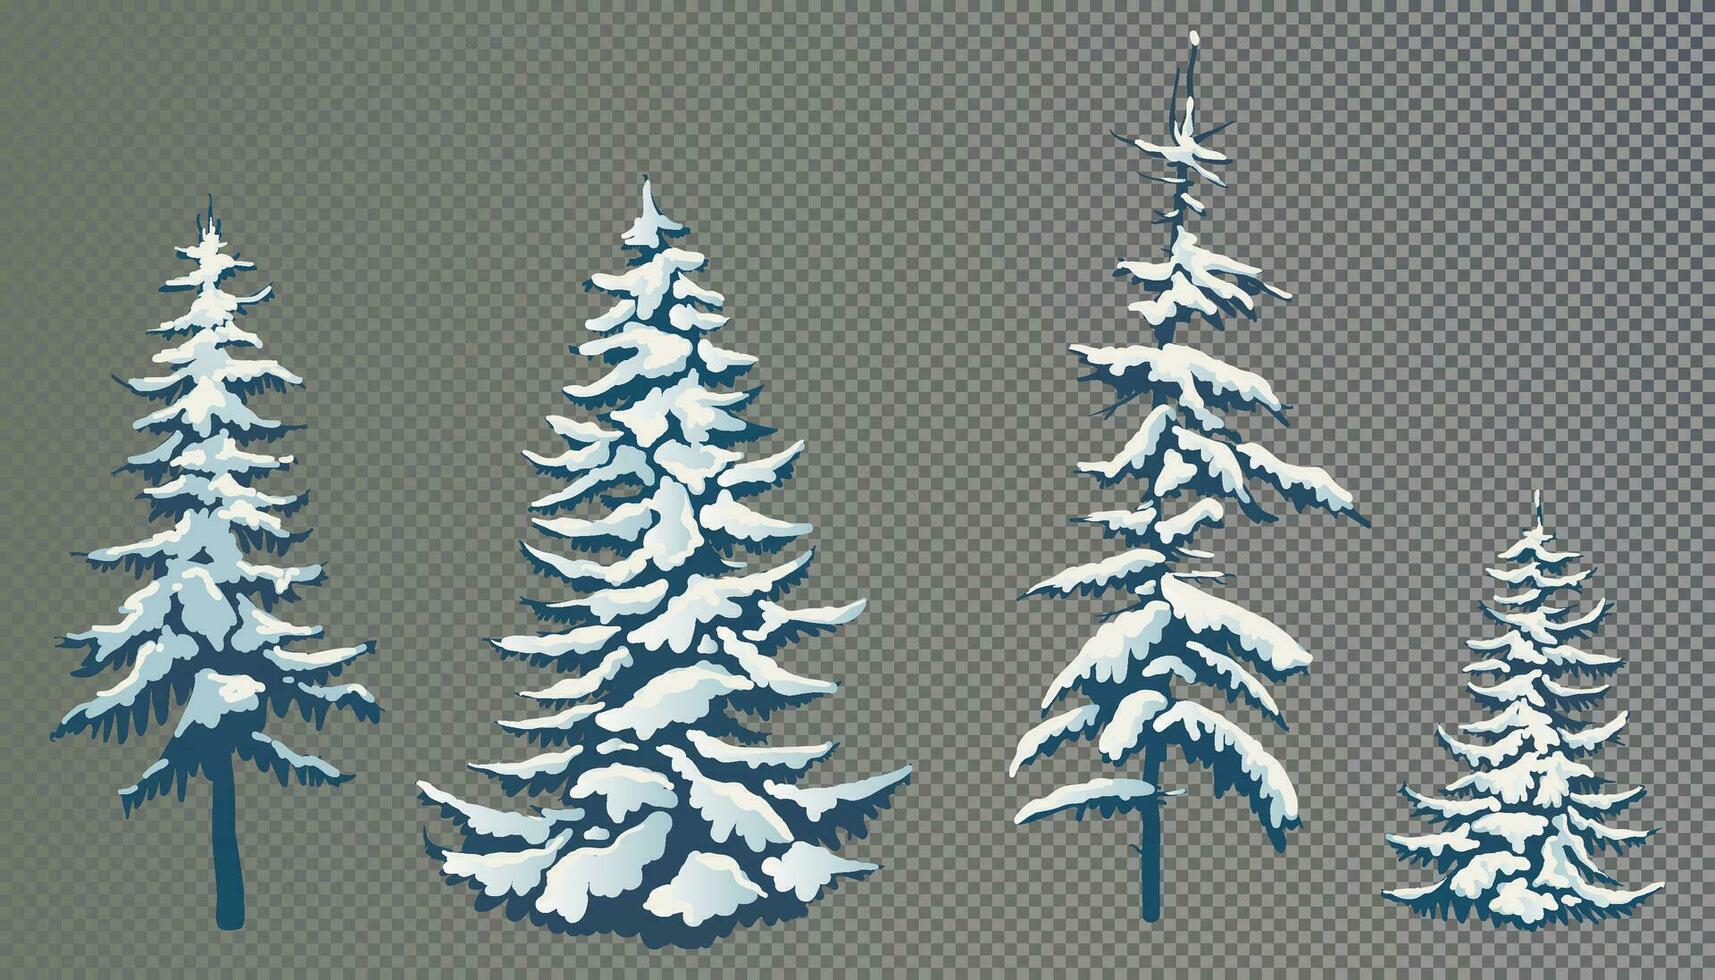 realista vector ilustración de un abeto árbol en el nieve. verde mullido pino. invierno cubierto de nieve arboles elementos para el Navidad escena.